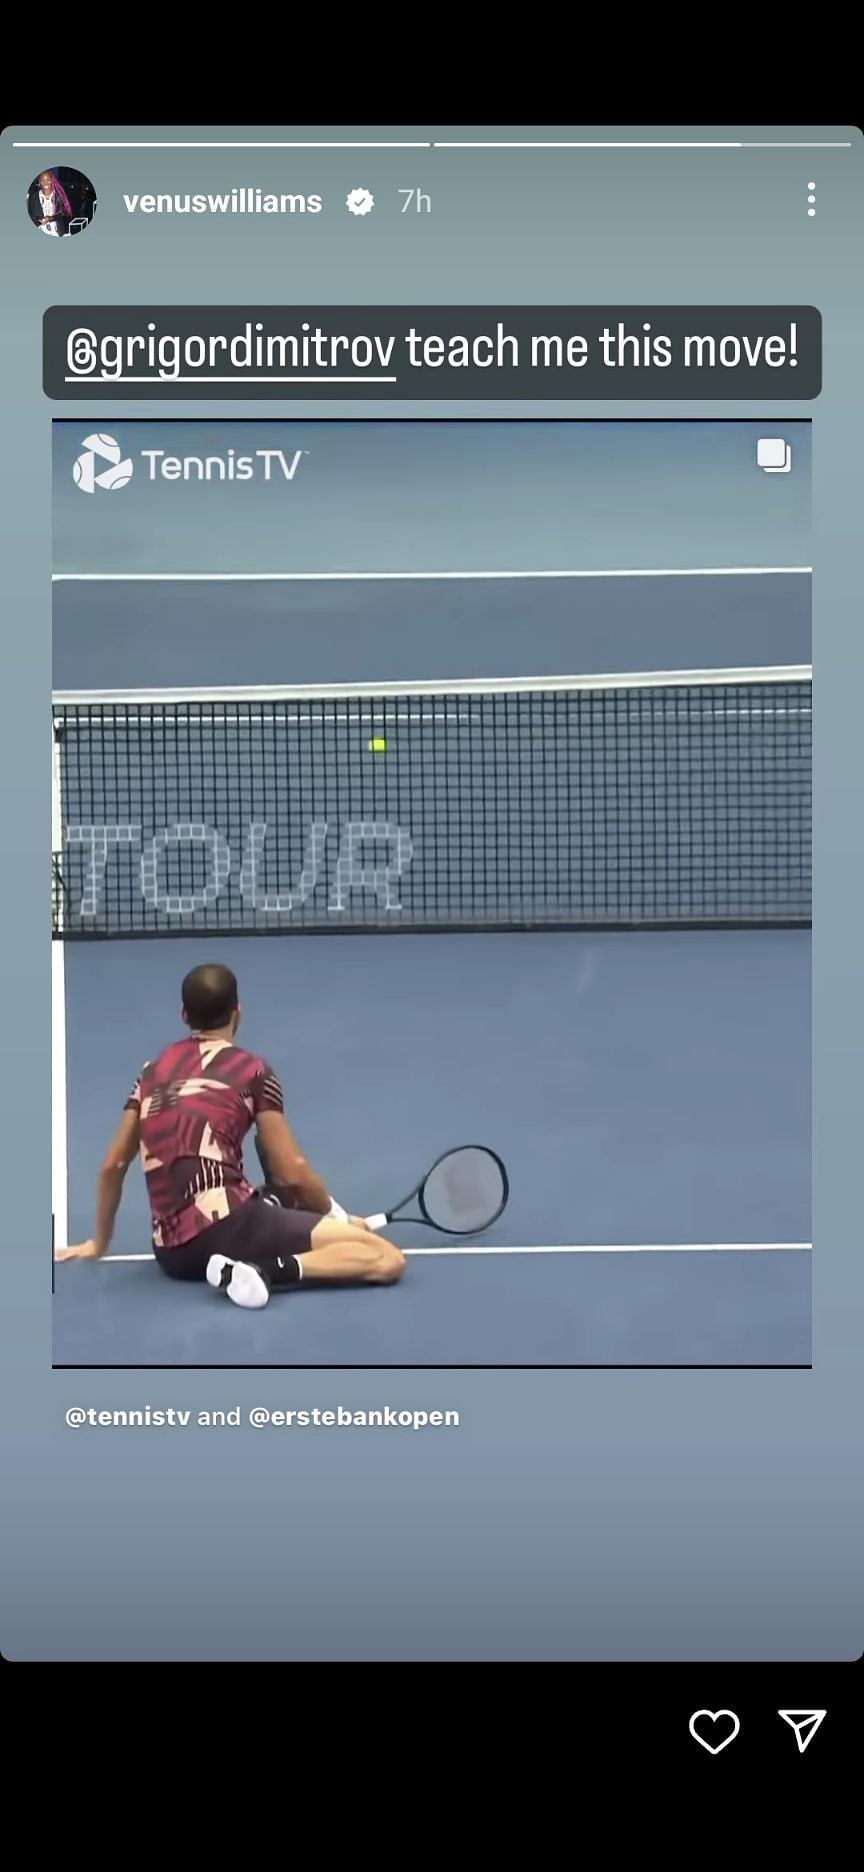 Venus Williams requesting Grigor Dimitrov